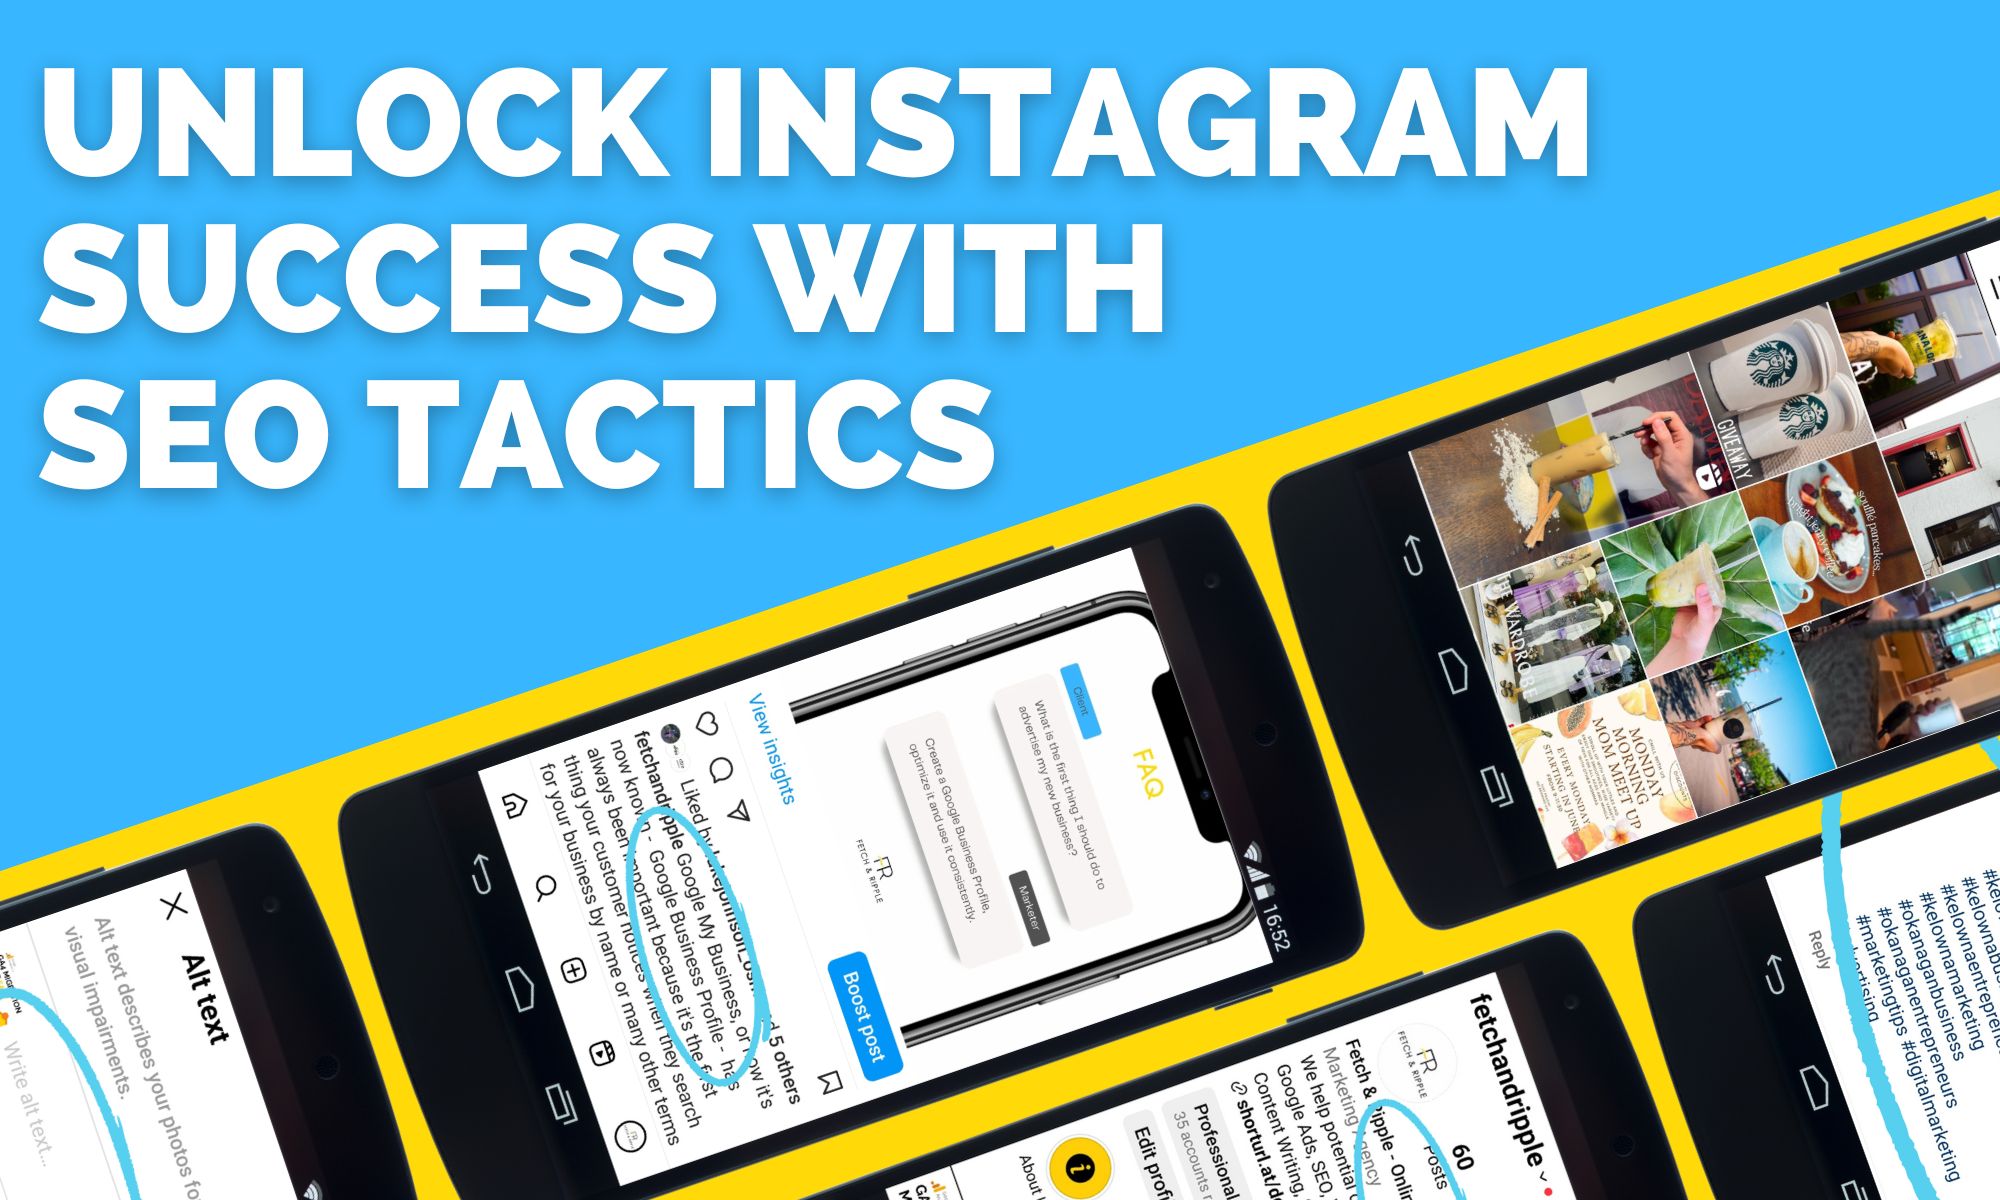 Unlocking Instagram Success